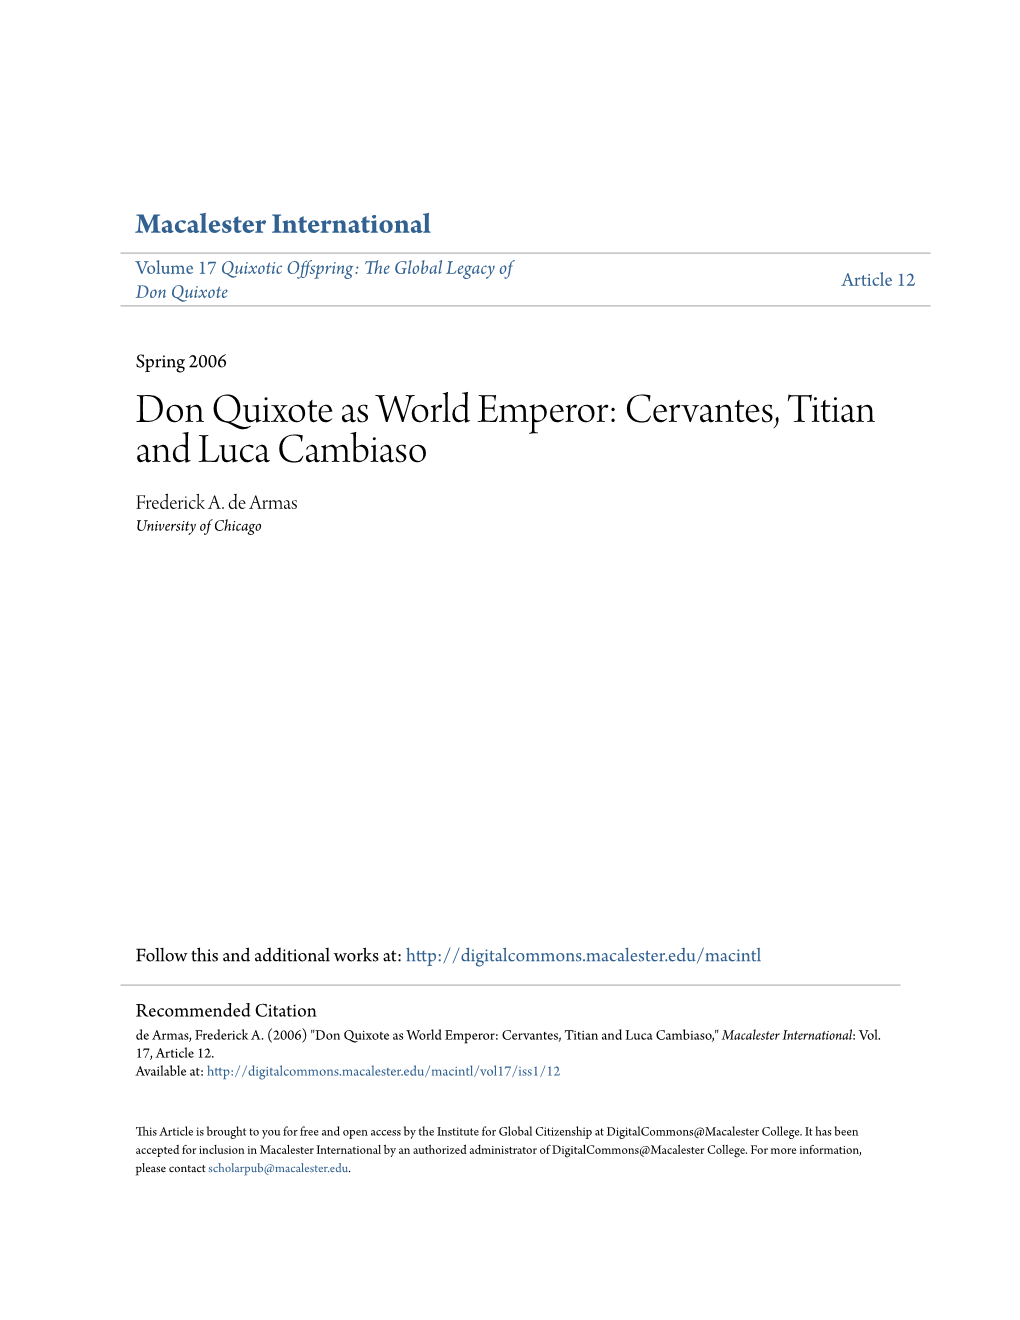 Don Quixote As World Emperor: Cervantes, Titian and Luca Cambiaso Frederick A